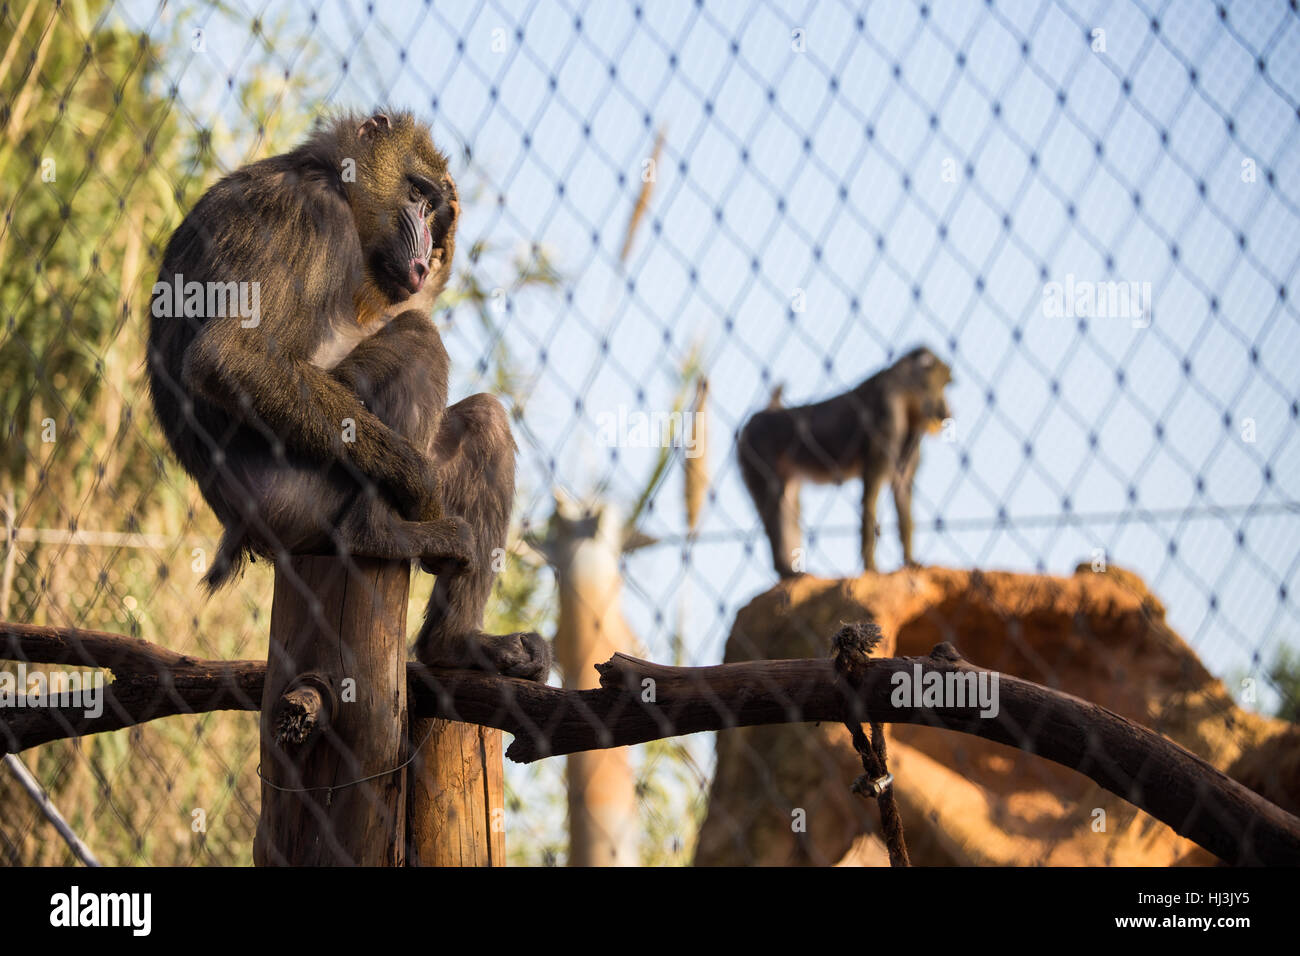 Weibliche Mandrills sitzt in einem Käfig reiben ihren Kopf im Zoo von Rabat, Marokko Stockfoto